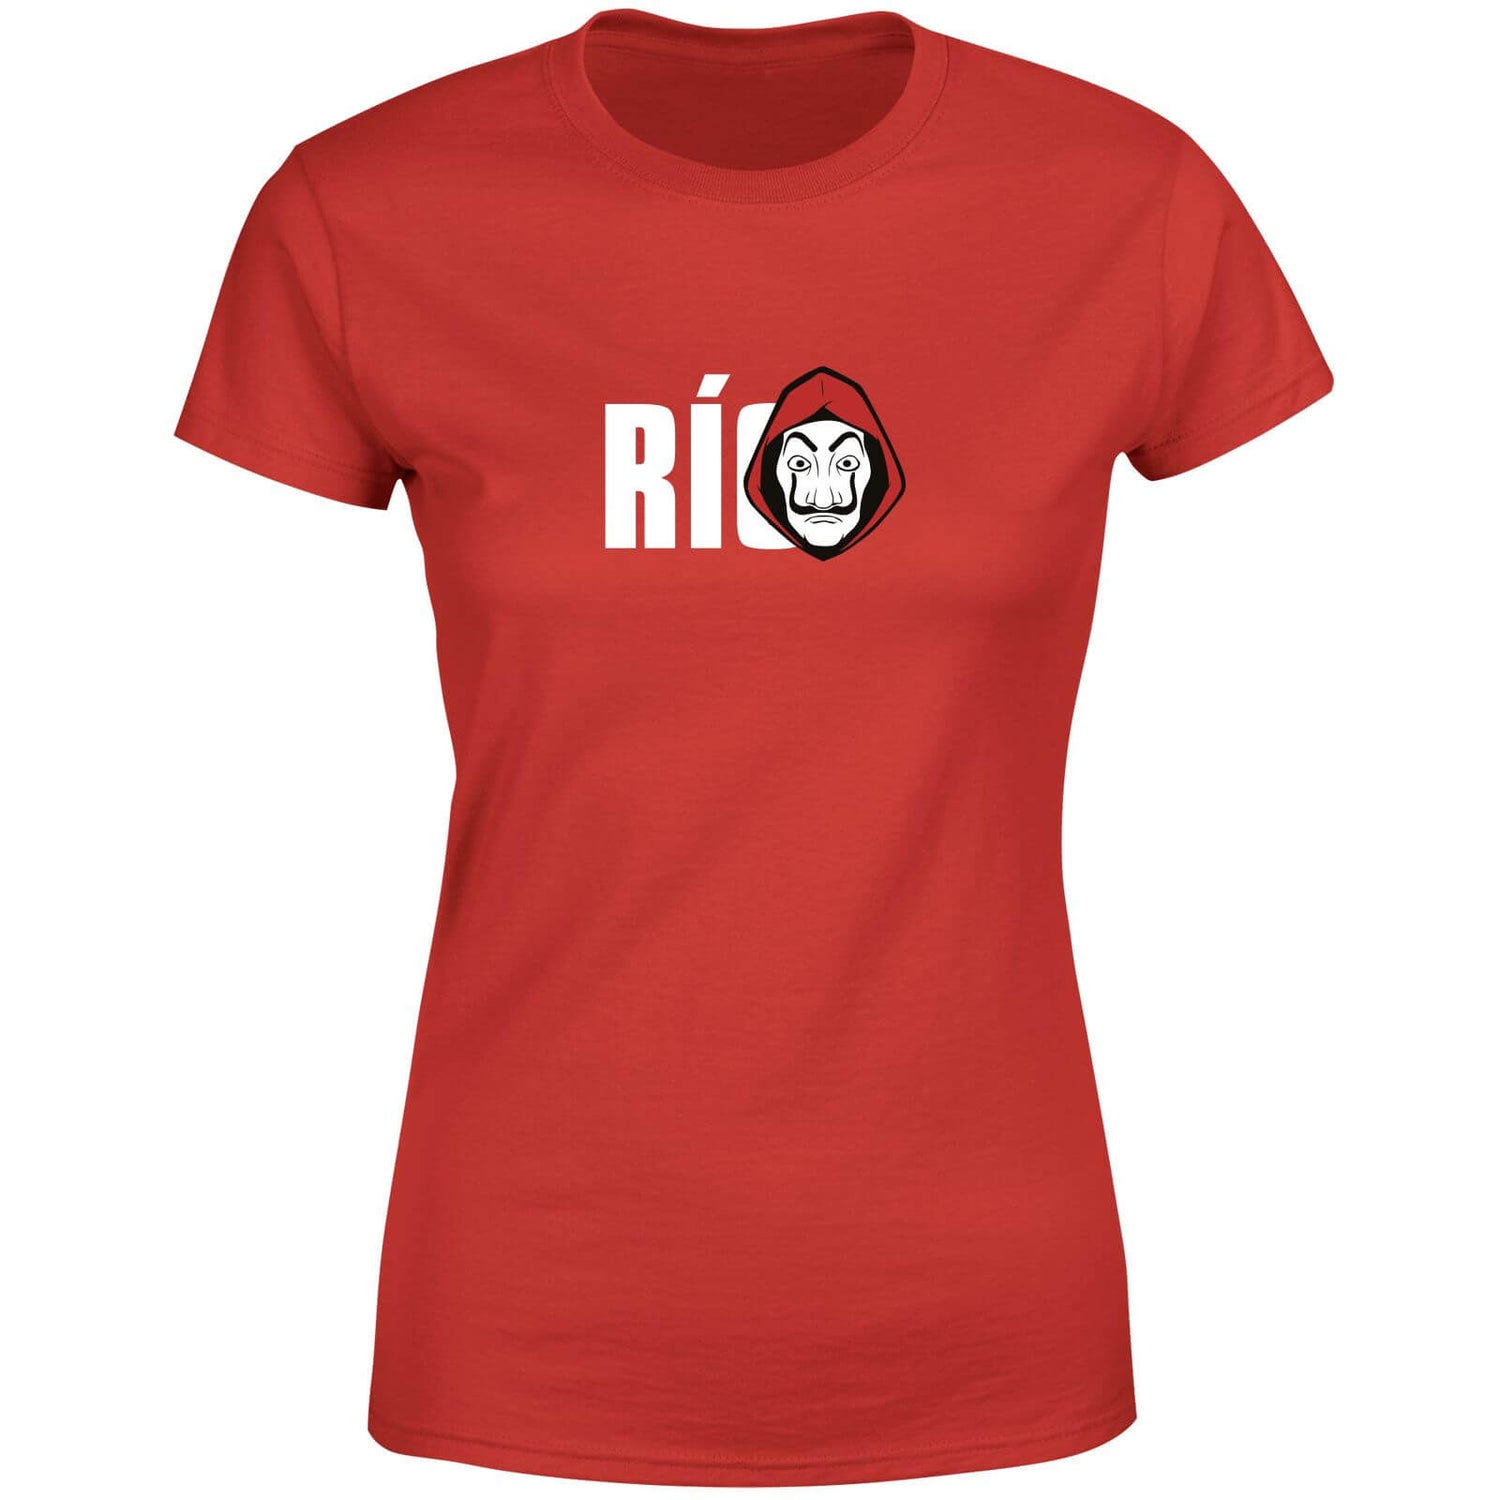 Money Heist Rio Women's T-Shirt - Red